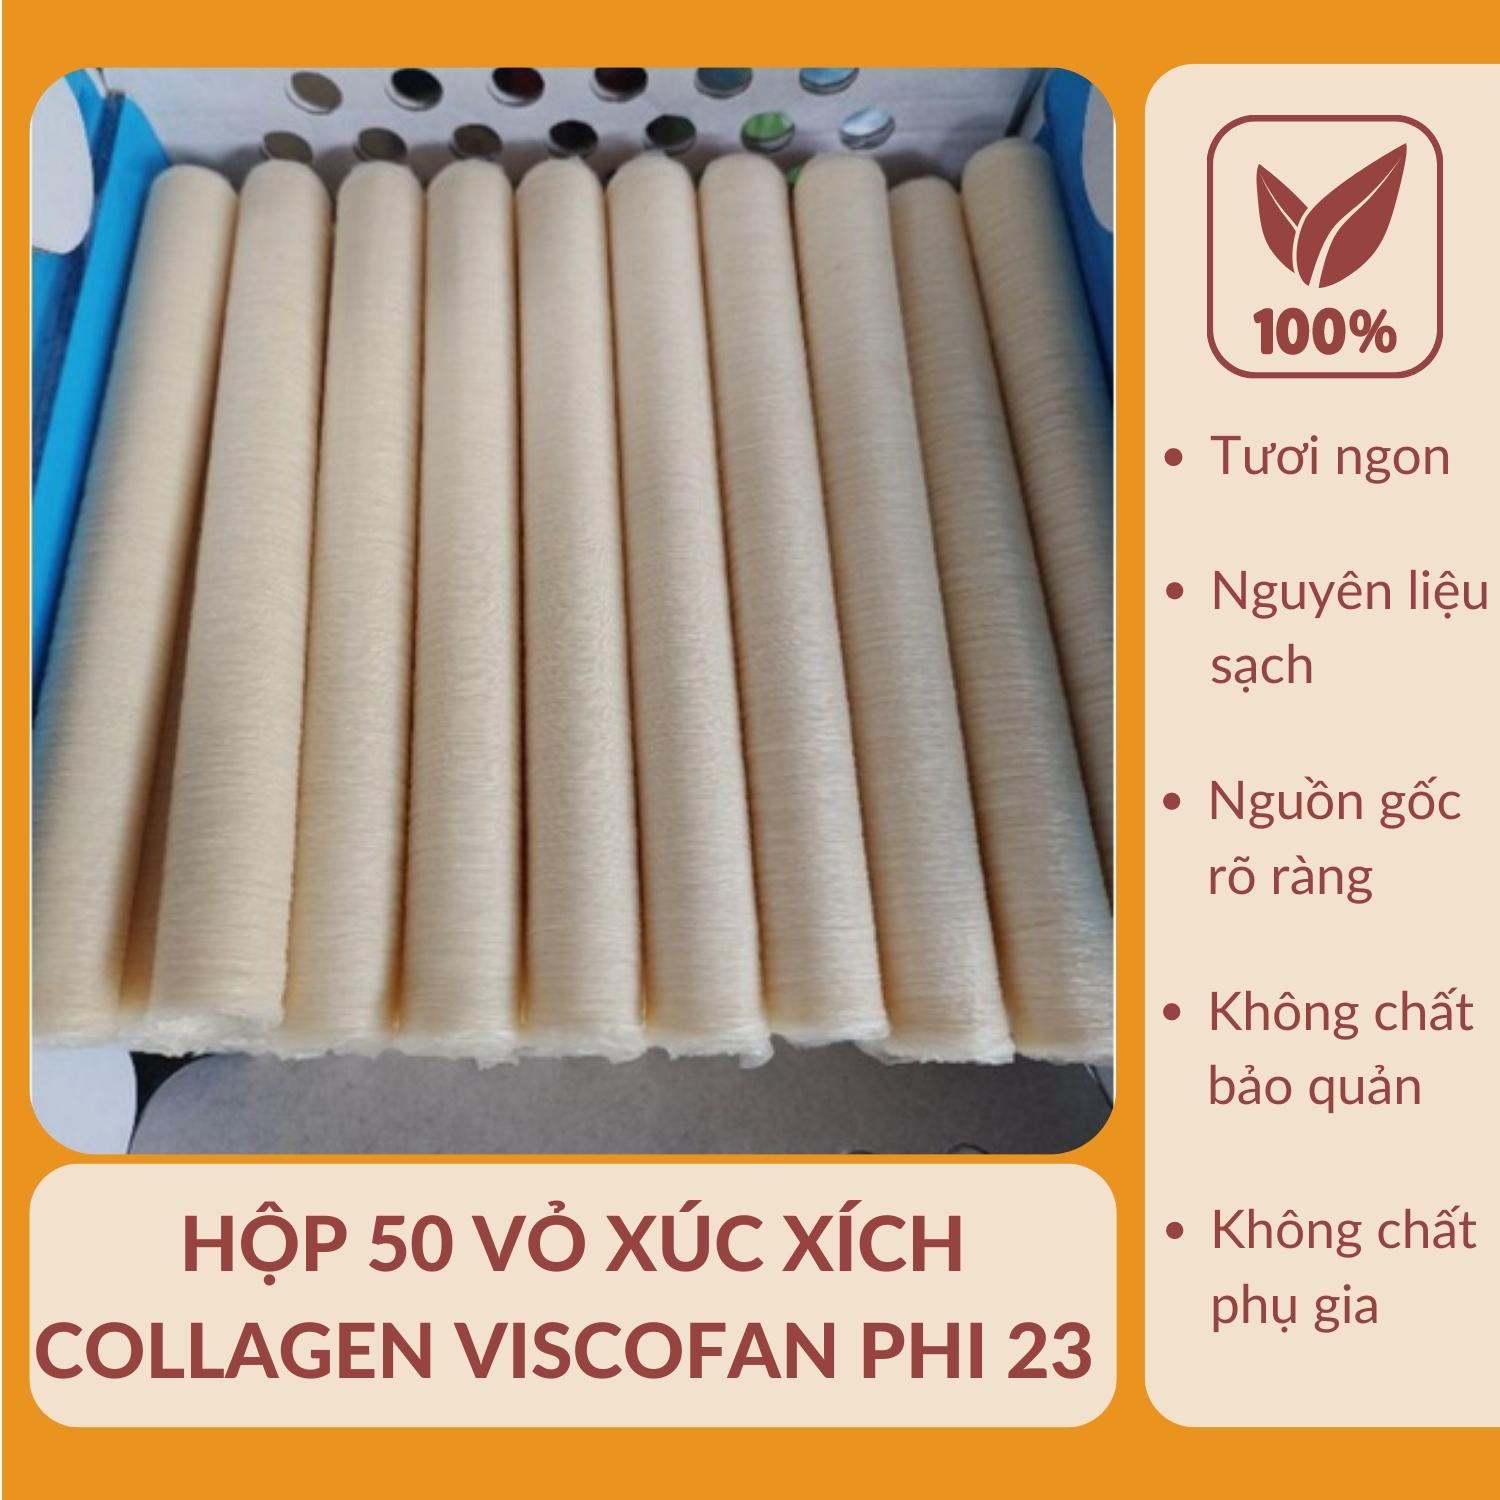 Hộp 50 cuộn vỏ xúc xích Collagen Viscofan Phi 24. Đảm bảo hàng chuẩn